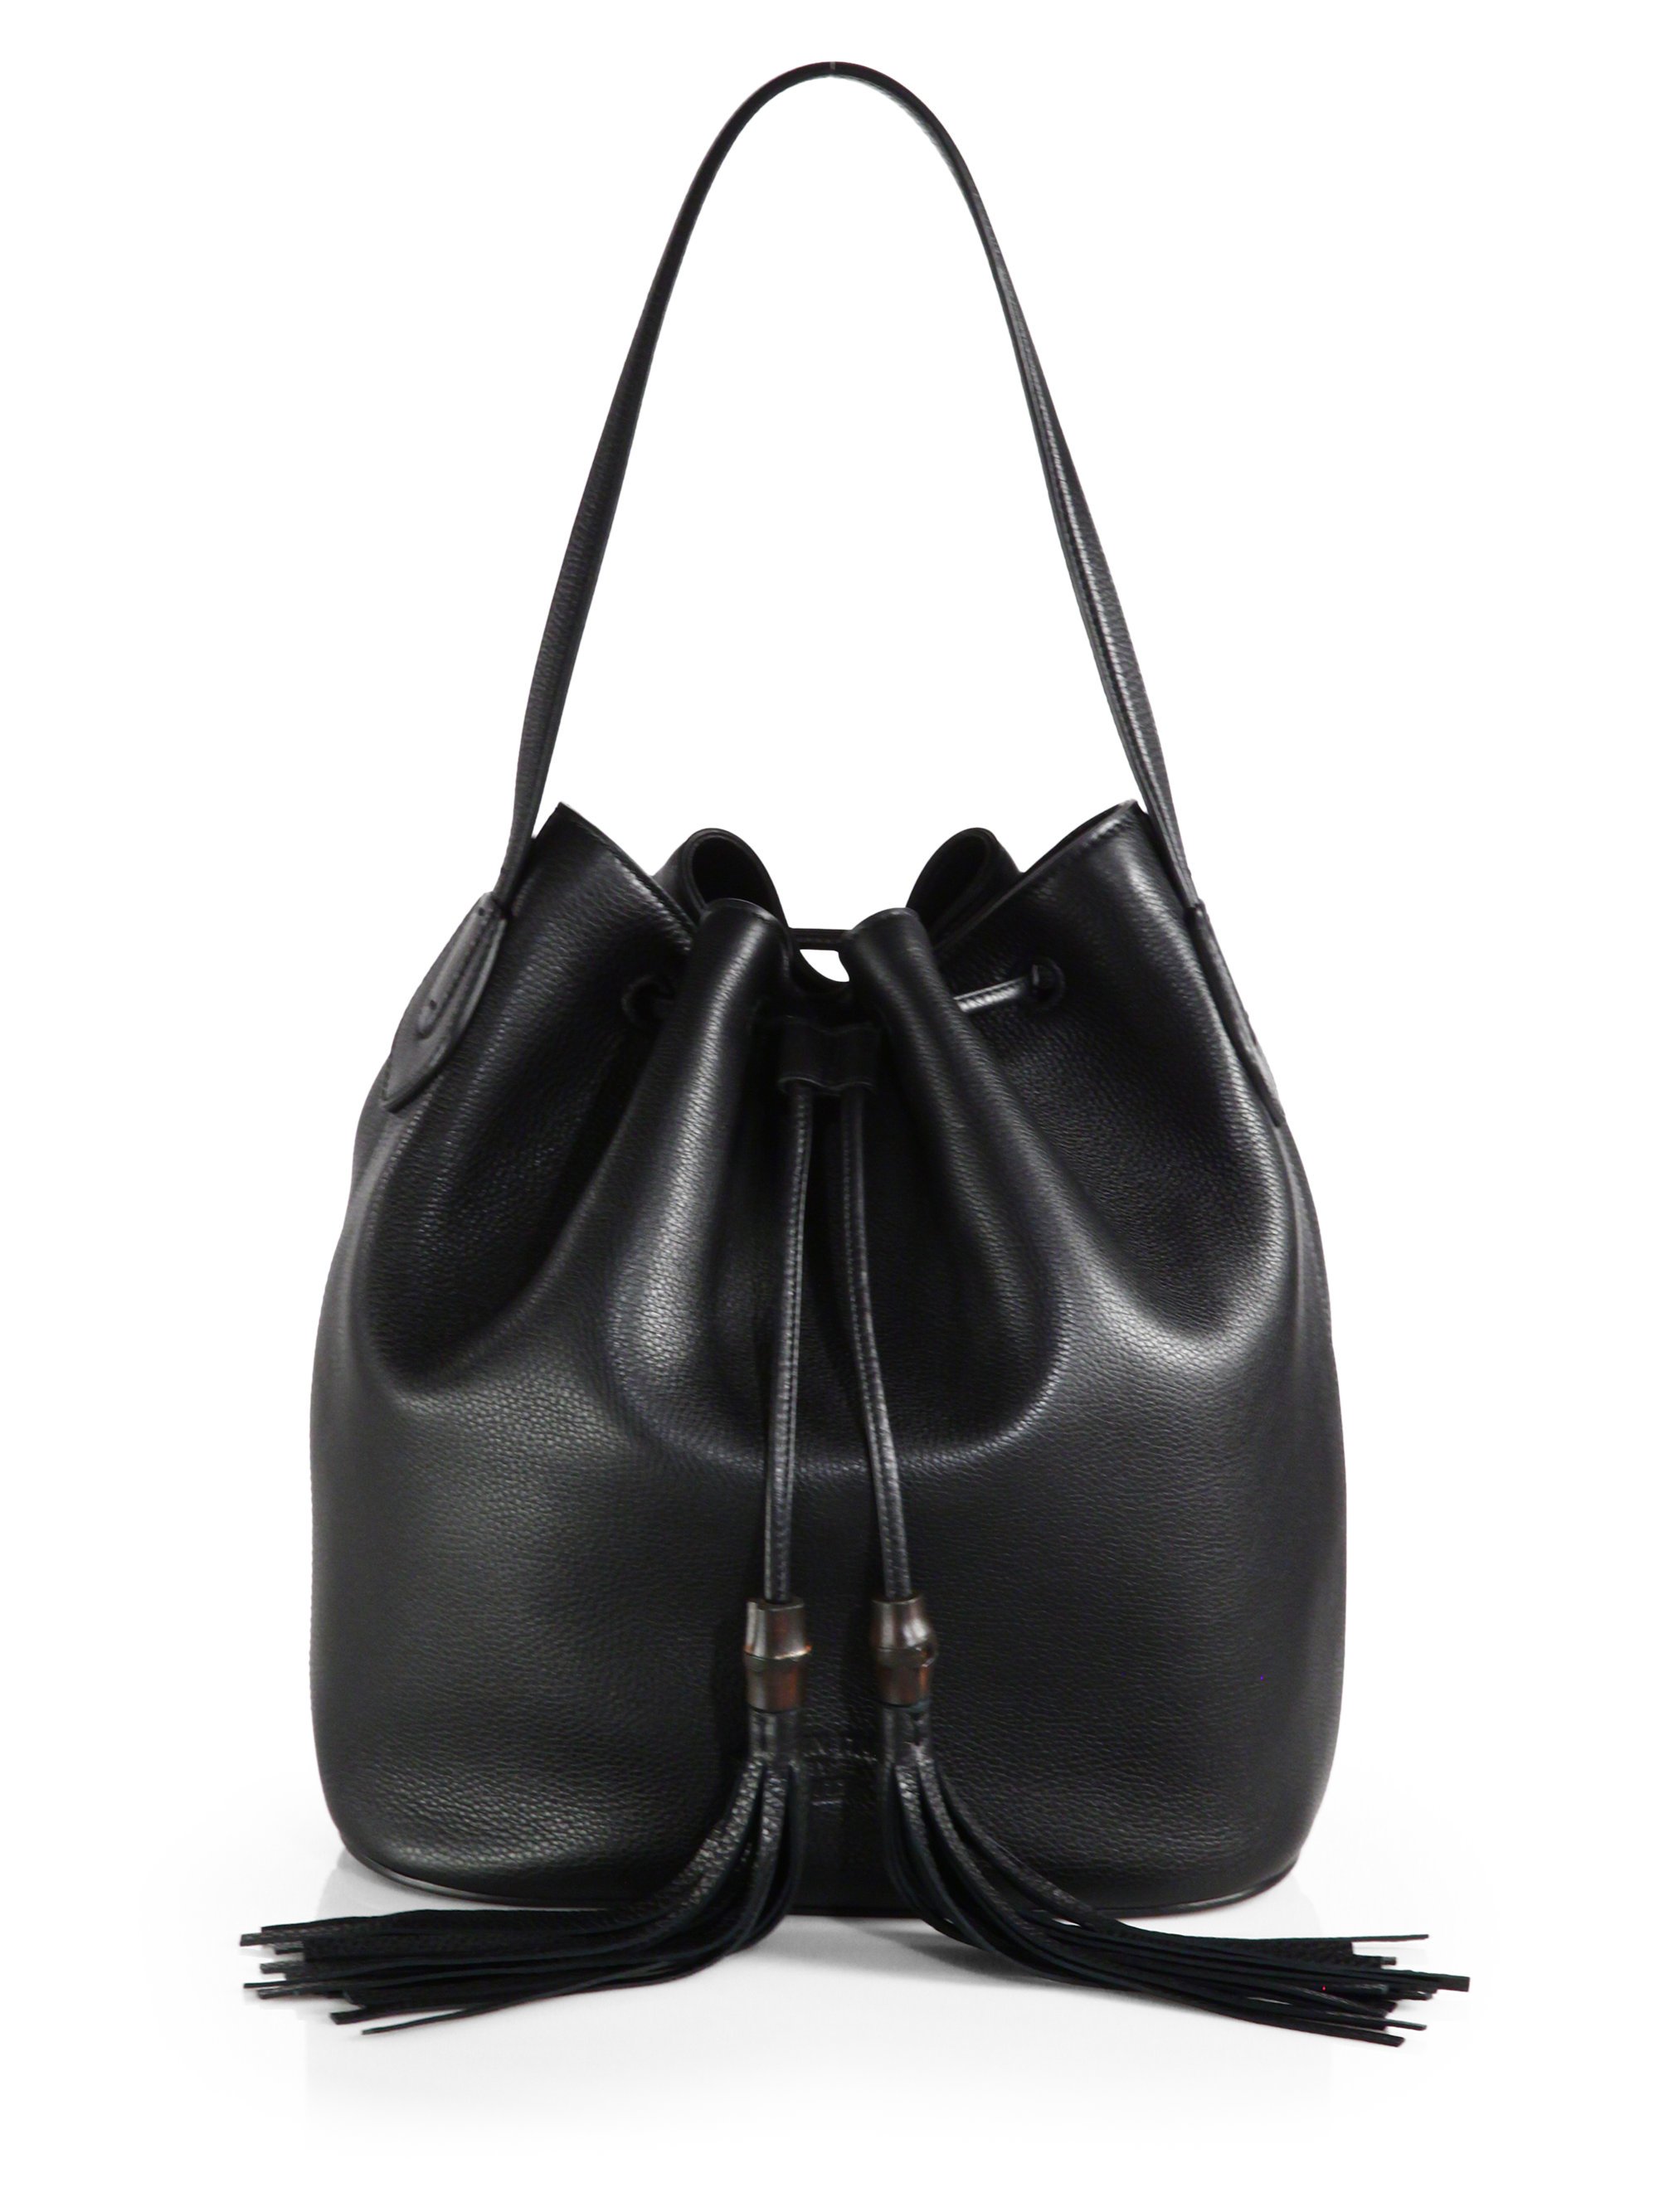 Lyst - Gucci Lady Tassel Leather Bucket Bag in Black